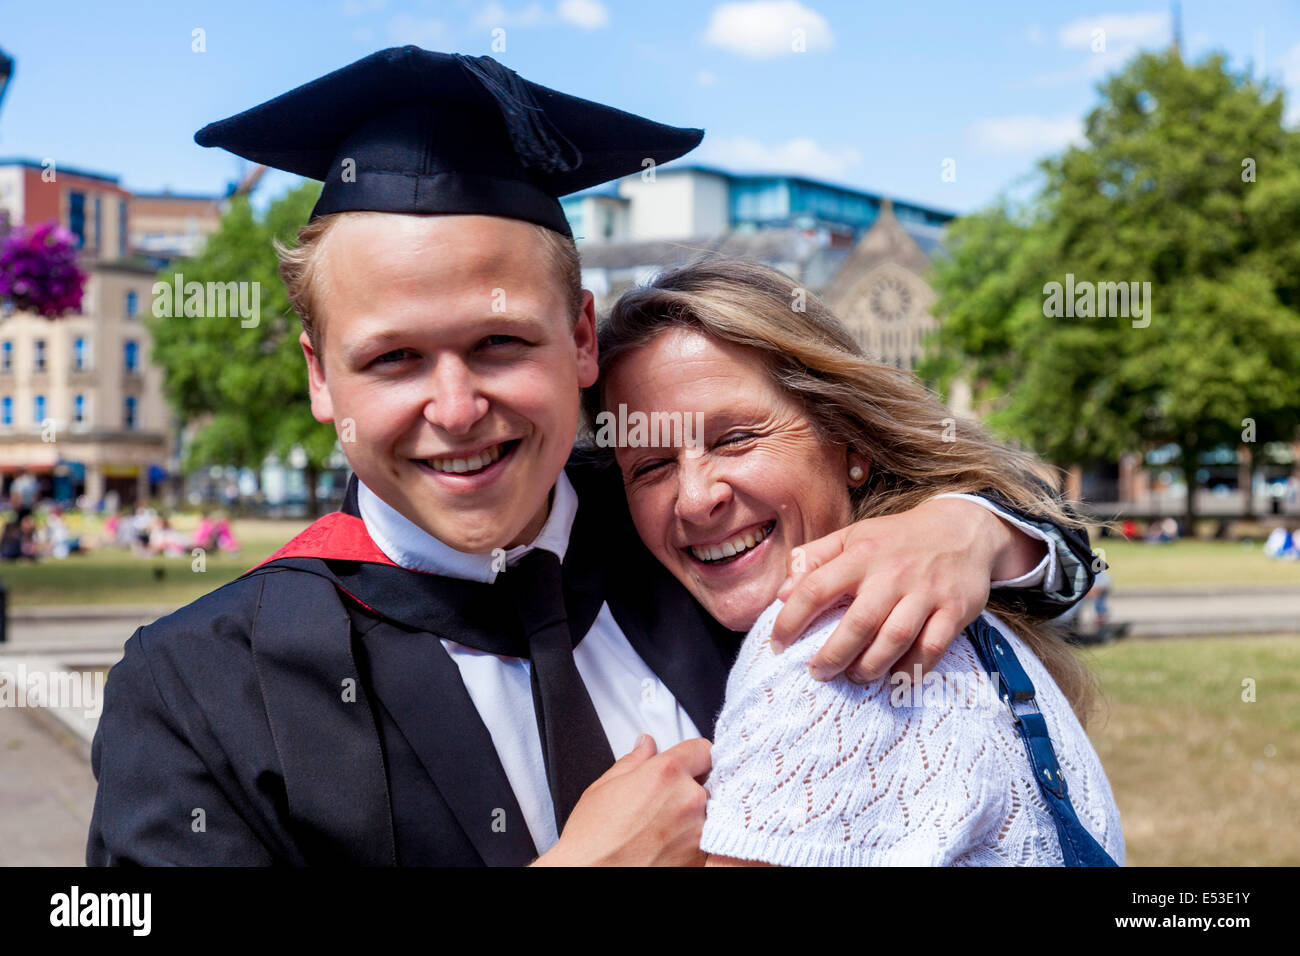 Une Fière mère et son fils, diplômé de l'Université de l'ouest de l'Angleterre (UWE) Degré Cérémonie, Bristol, Angleterre Banque D'Images